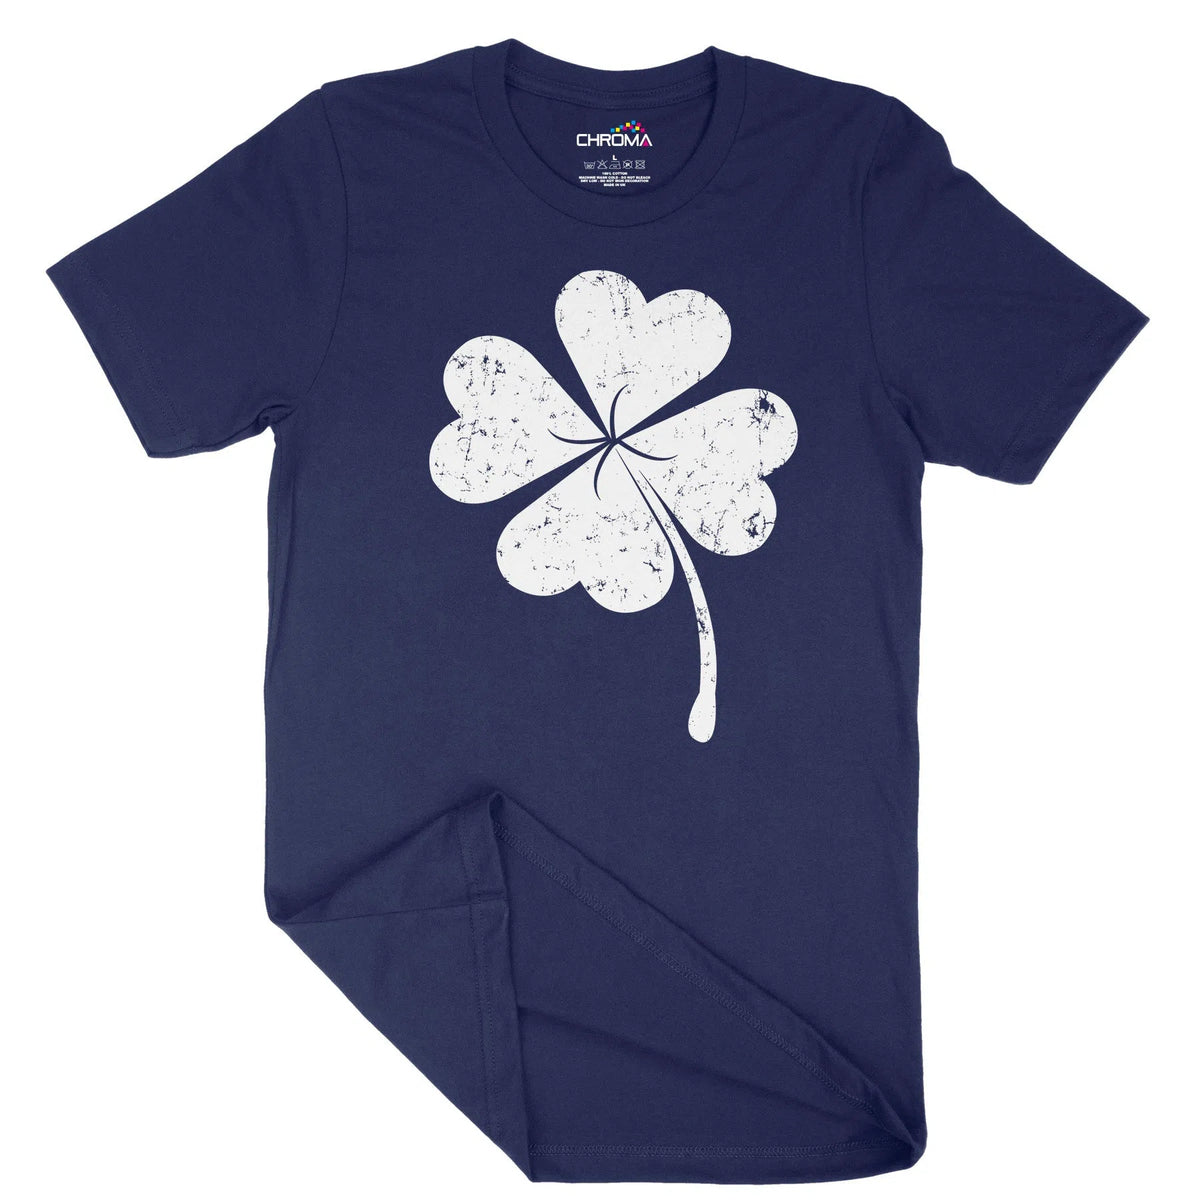 Irish Clover Unisex Adult T-Shirt | Quality Slogan Clothing Chroma Clothing